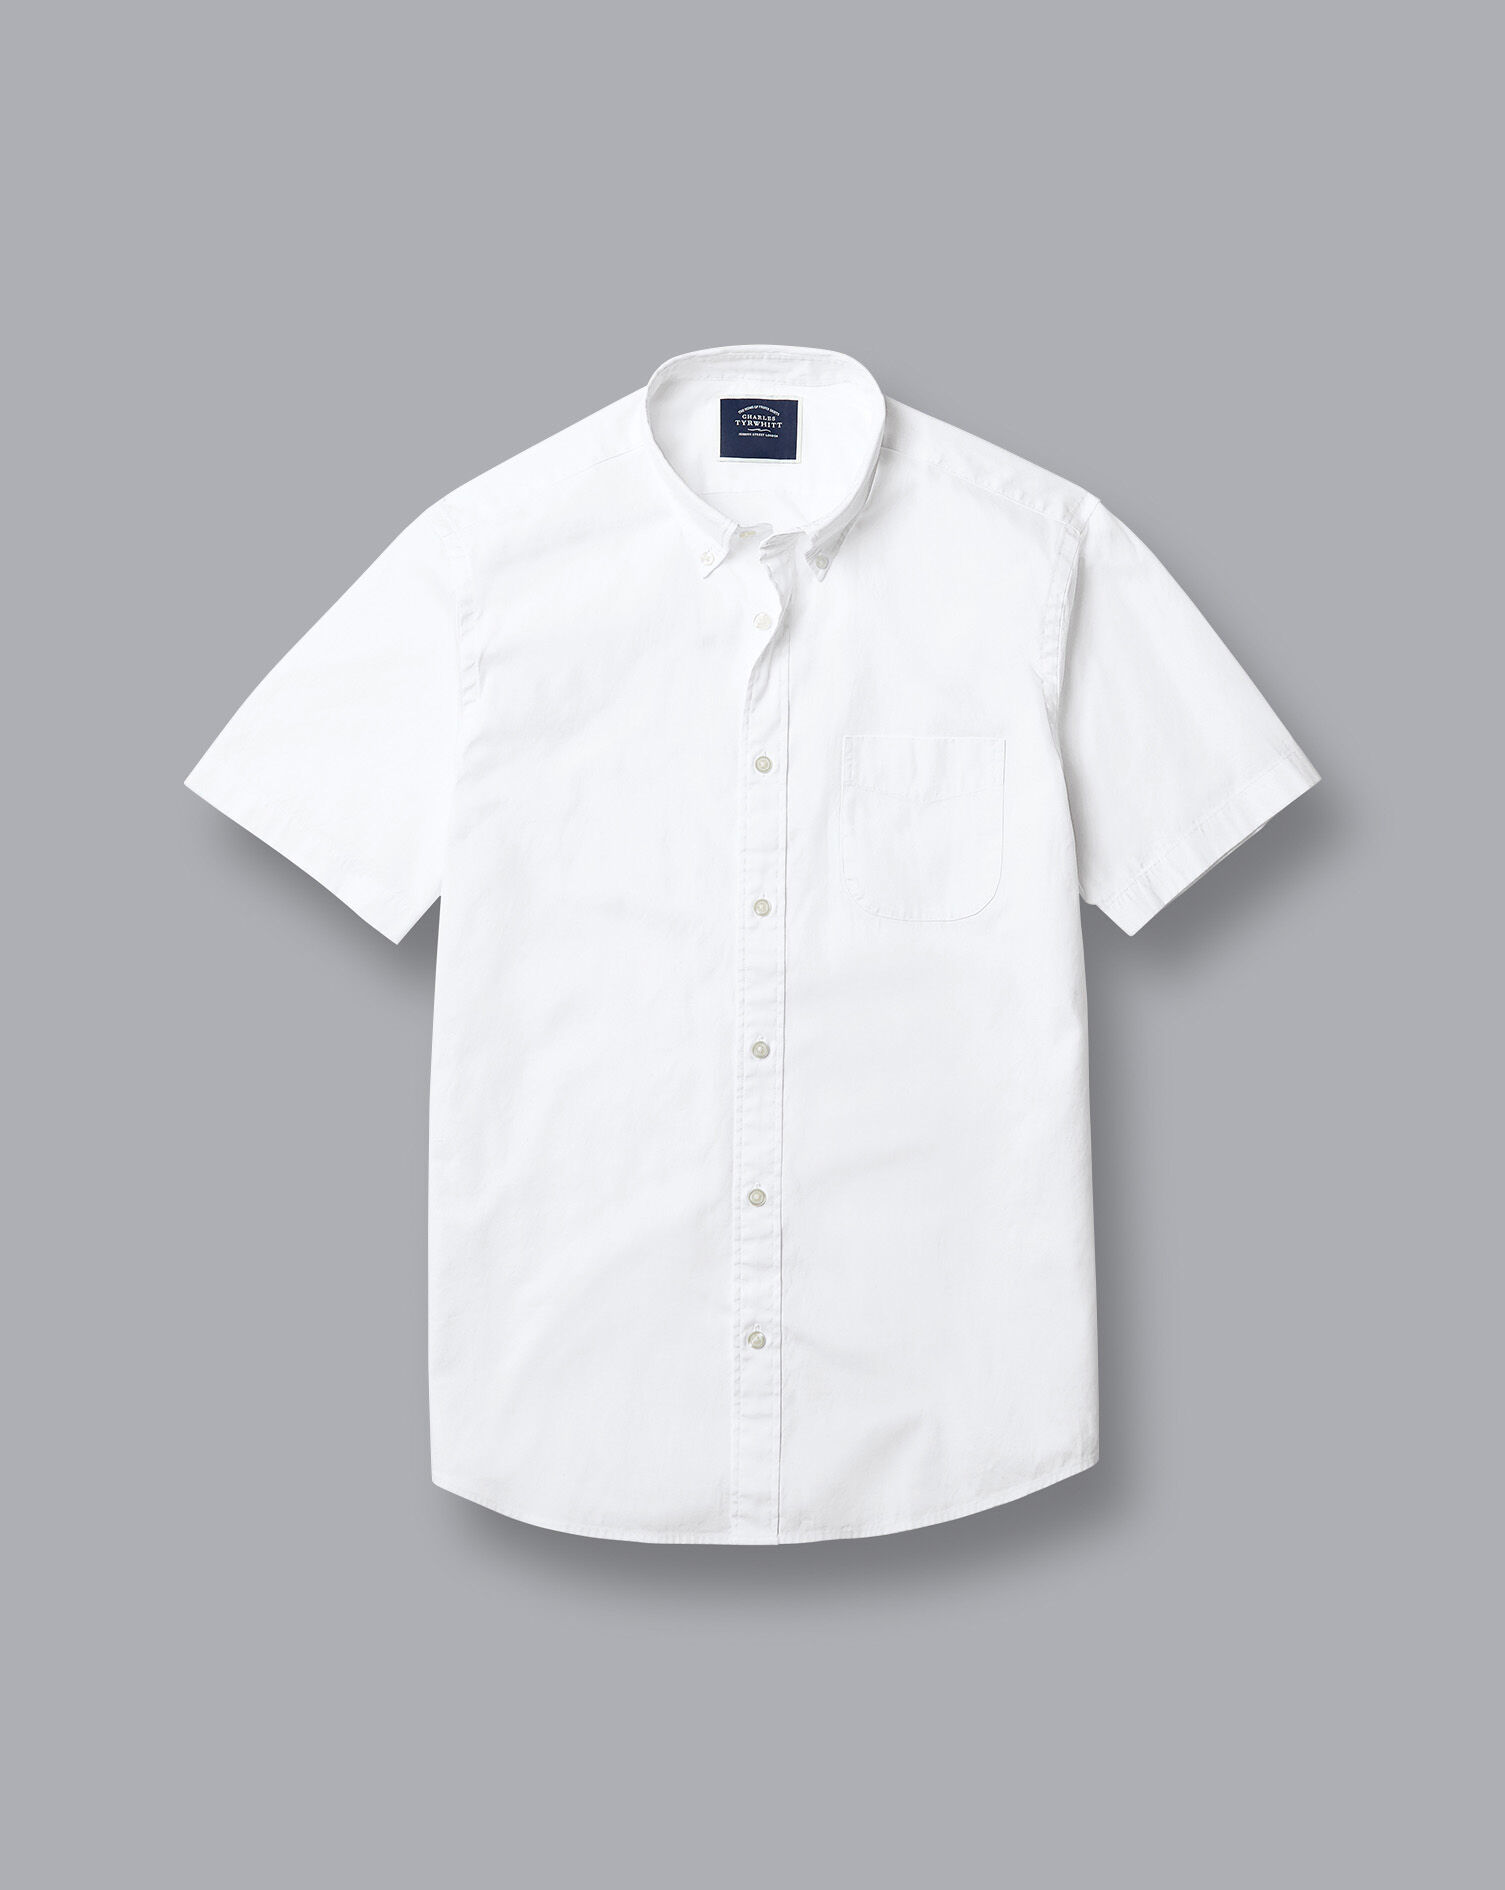 plain button up shirt